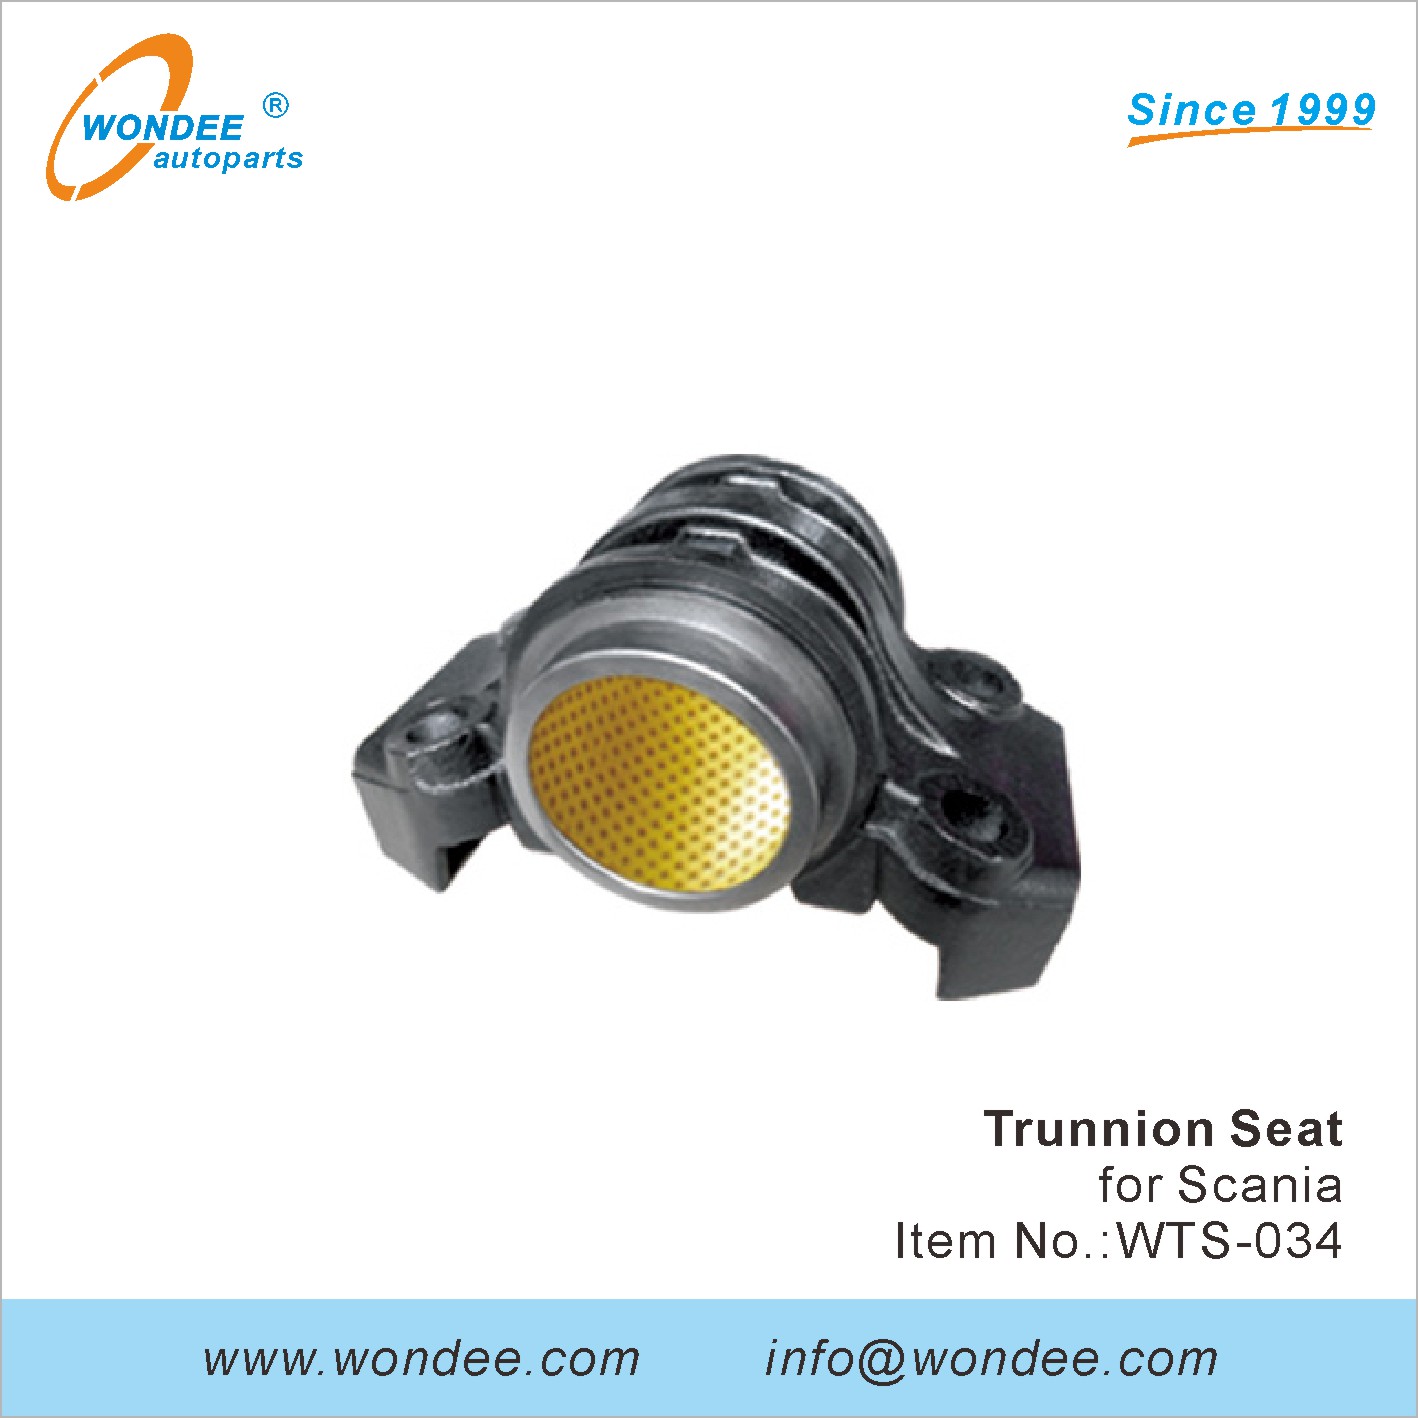 WONDEE Trunnion seat (34)